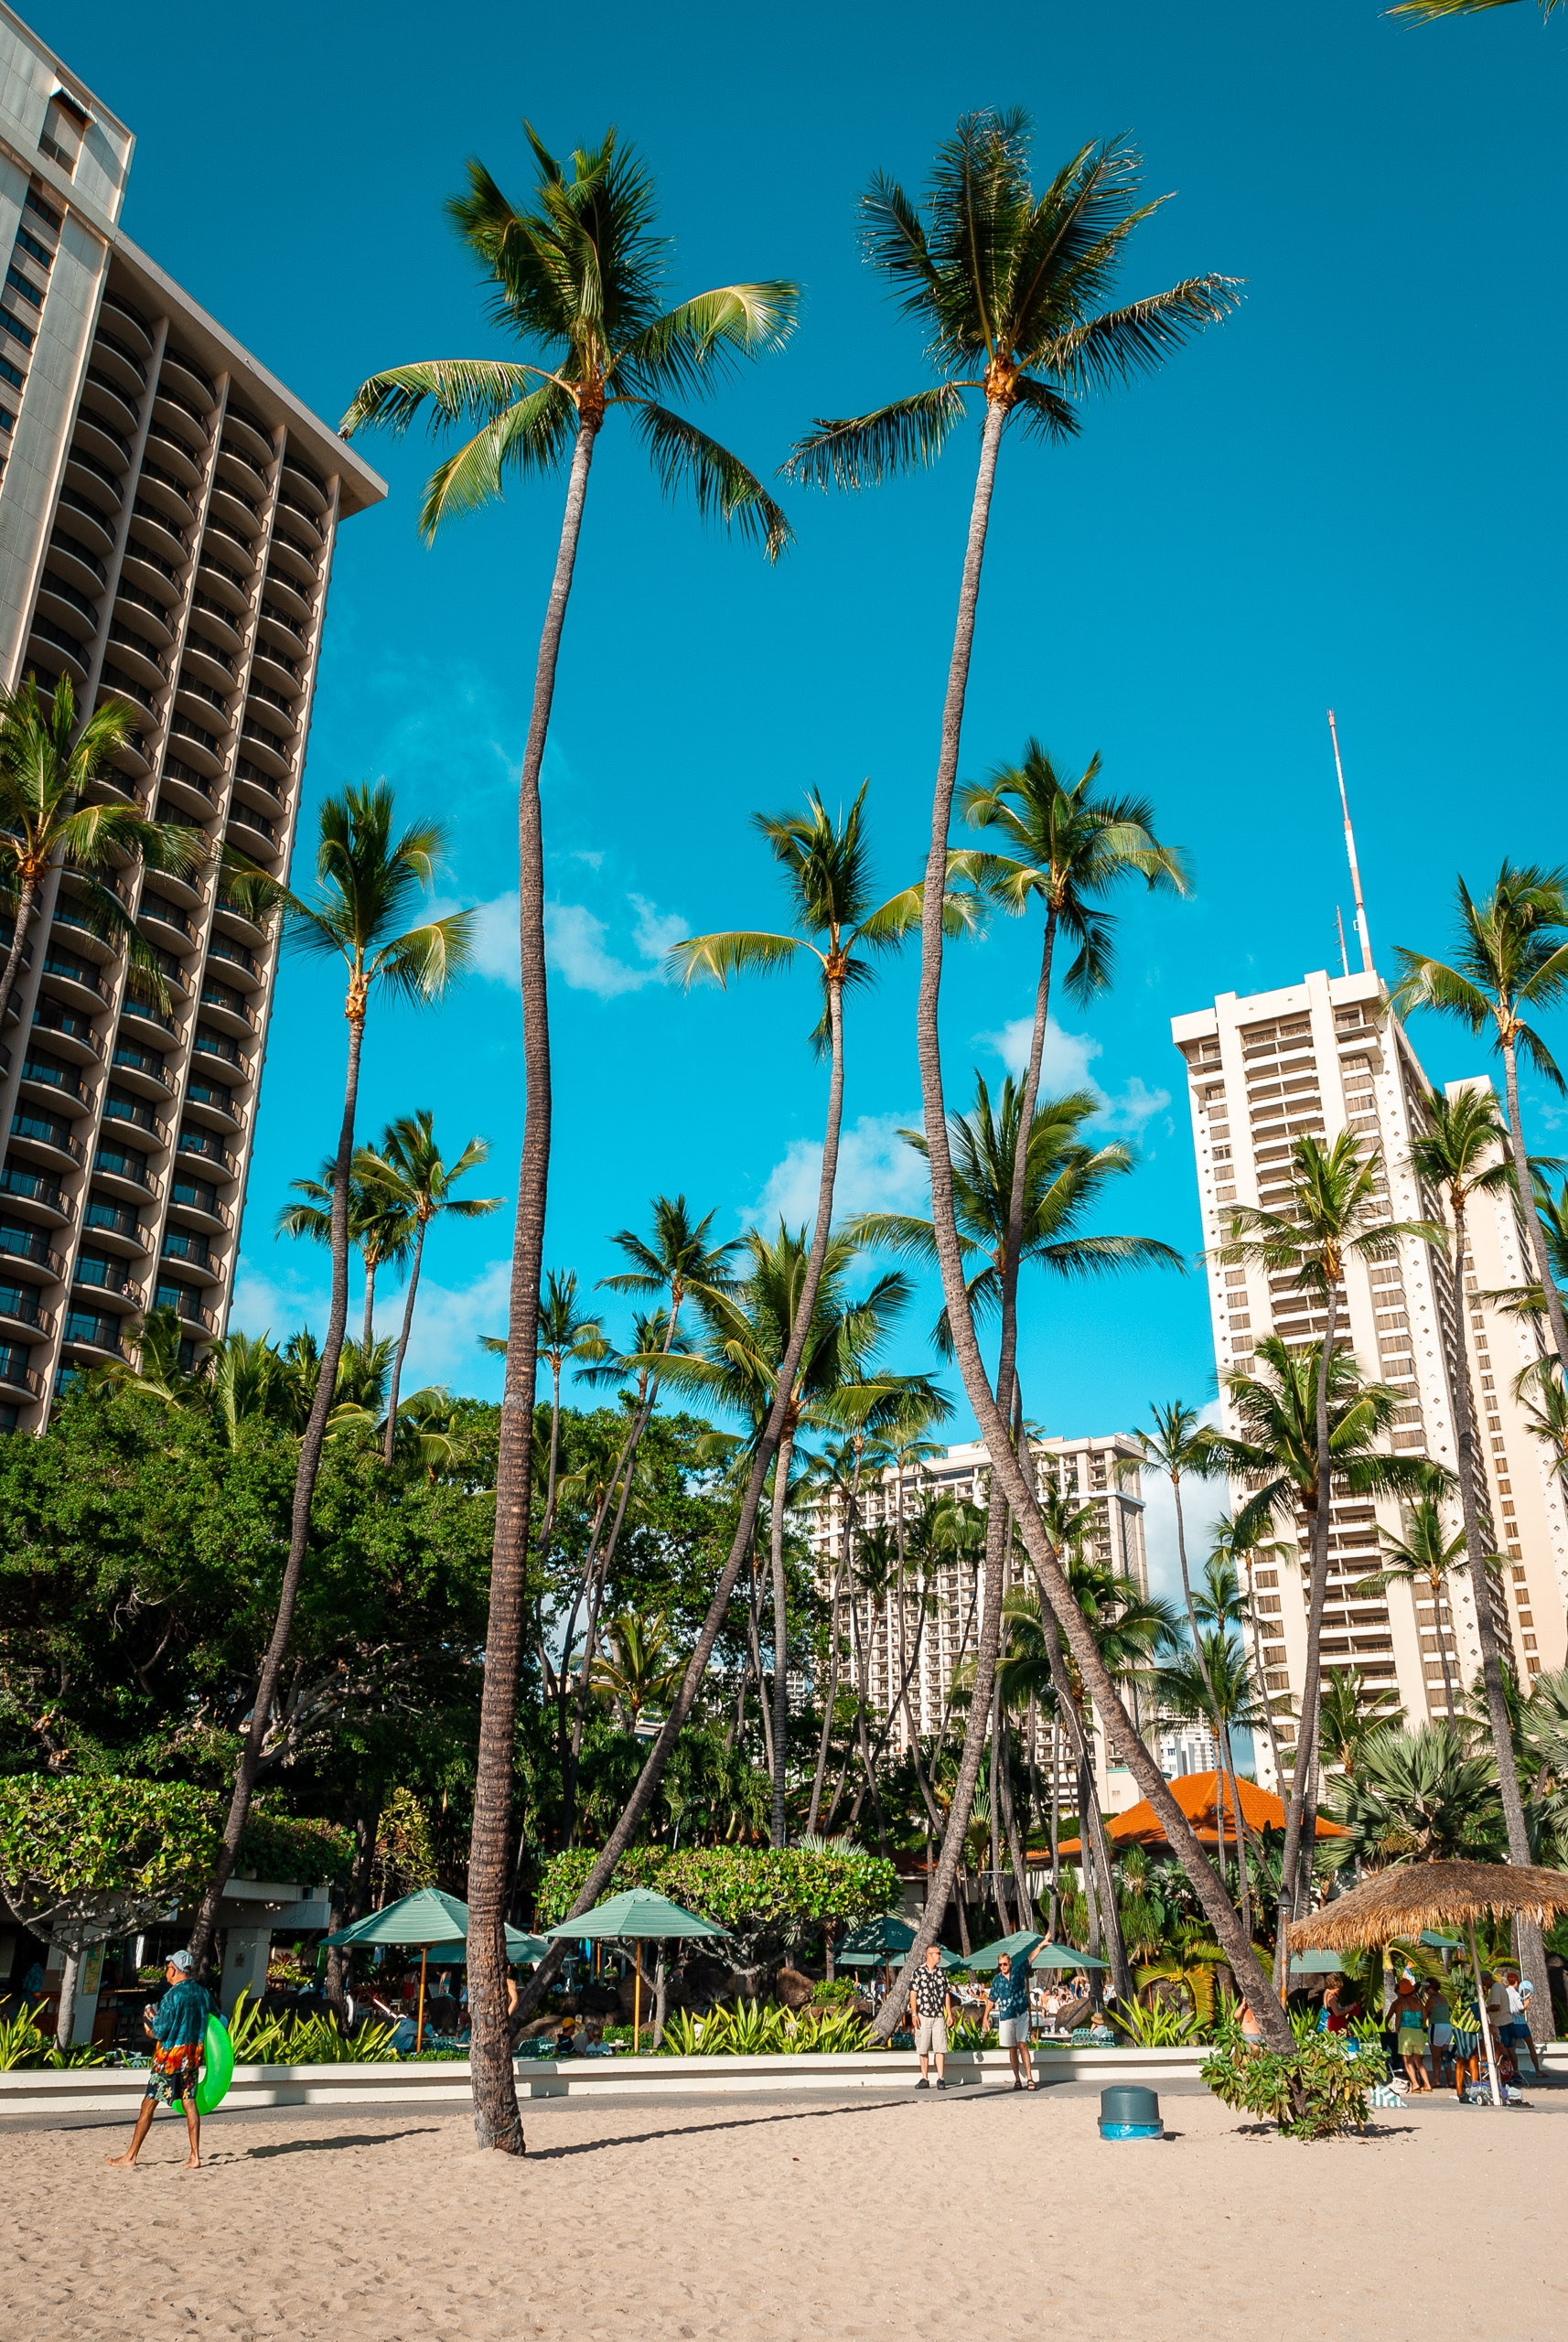 The Hilton Hawaiian Village in Waikiki 2